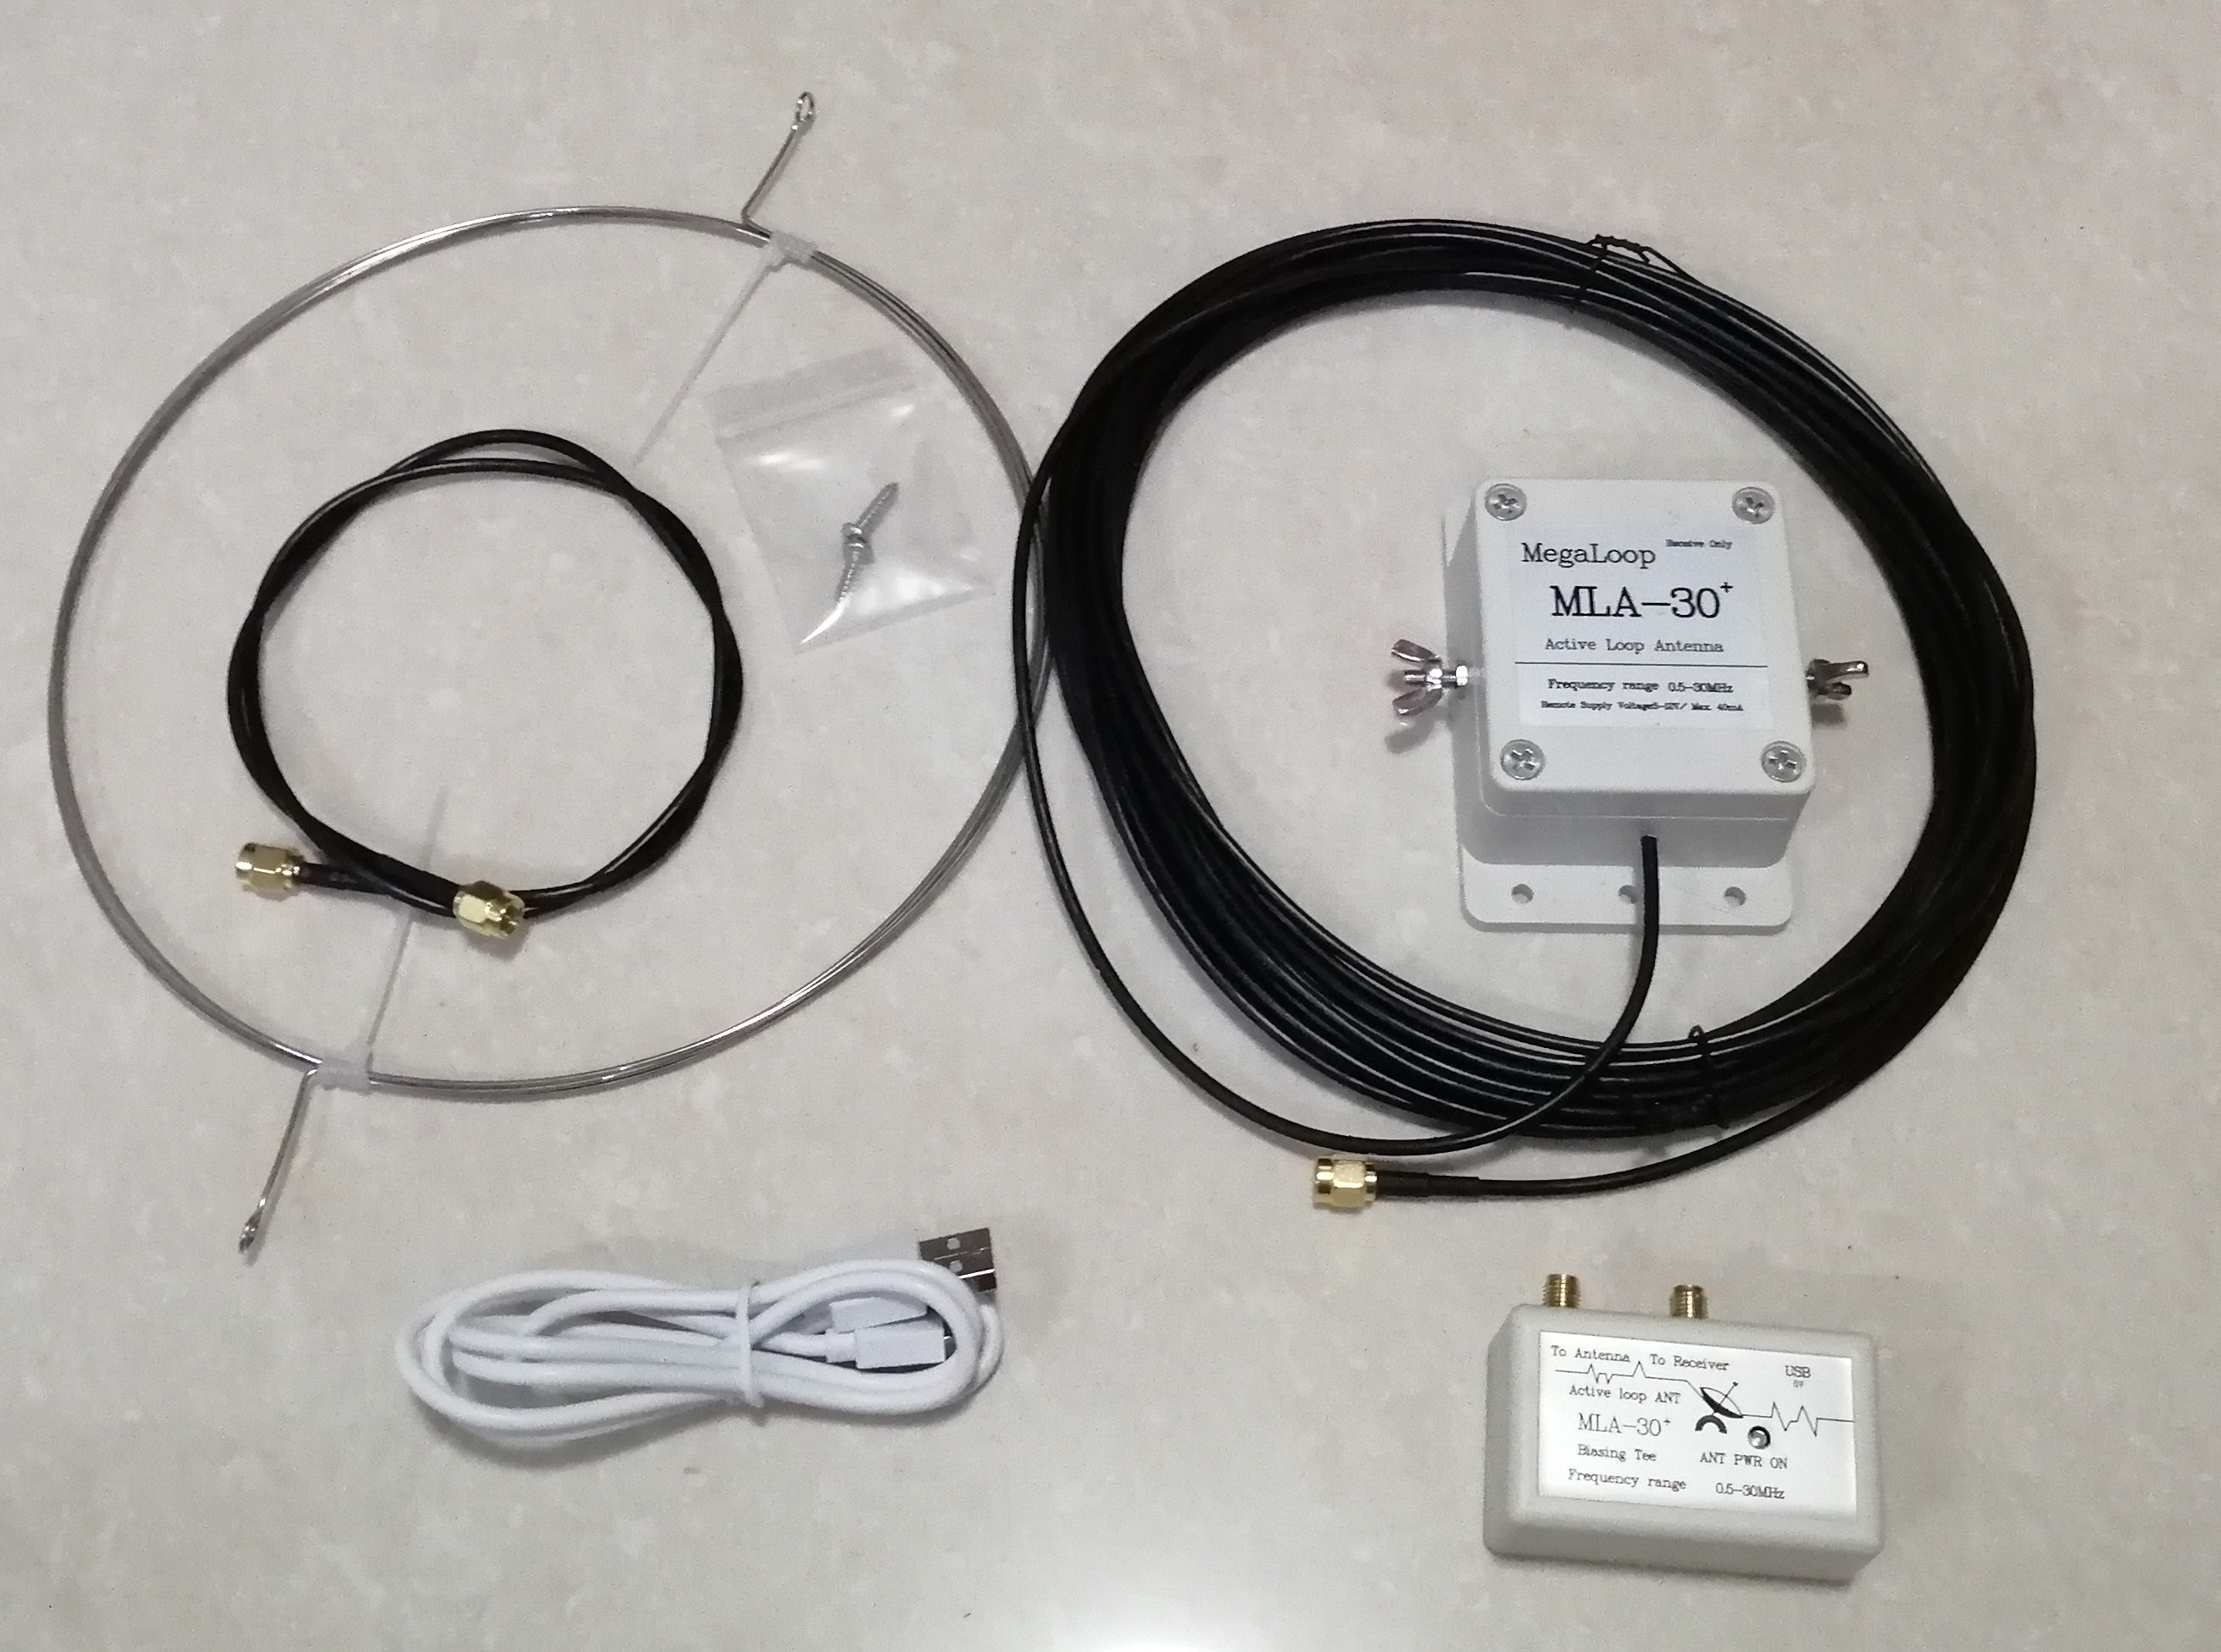 Mla30+ Aufwertung Loop Active erhalten Antenne 100khz